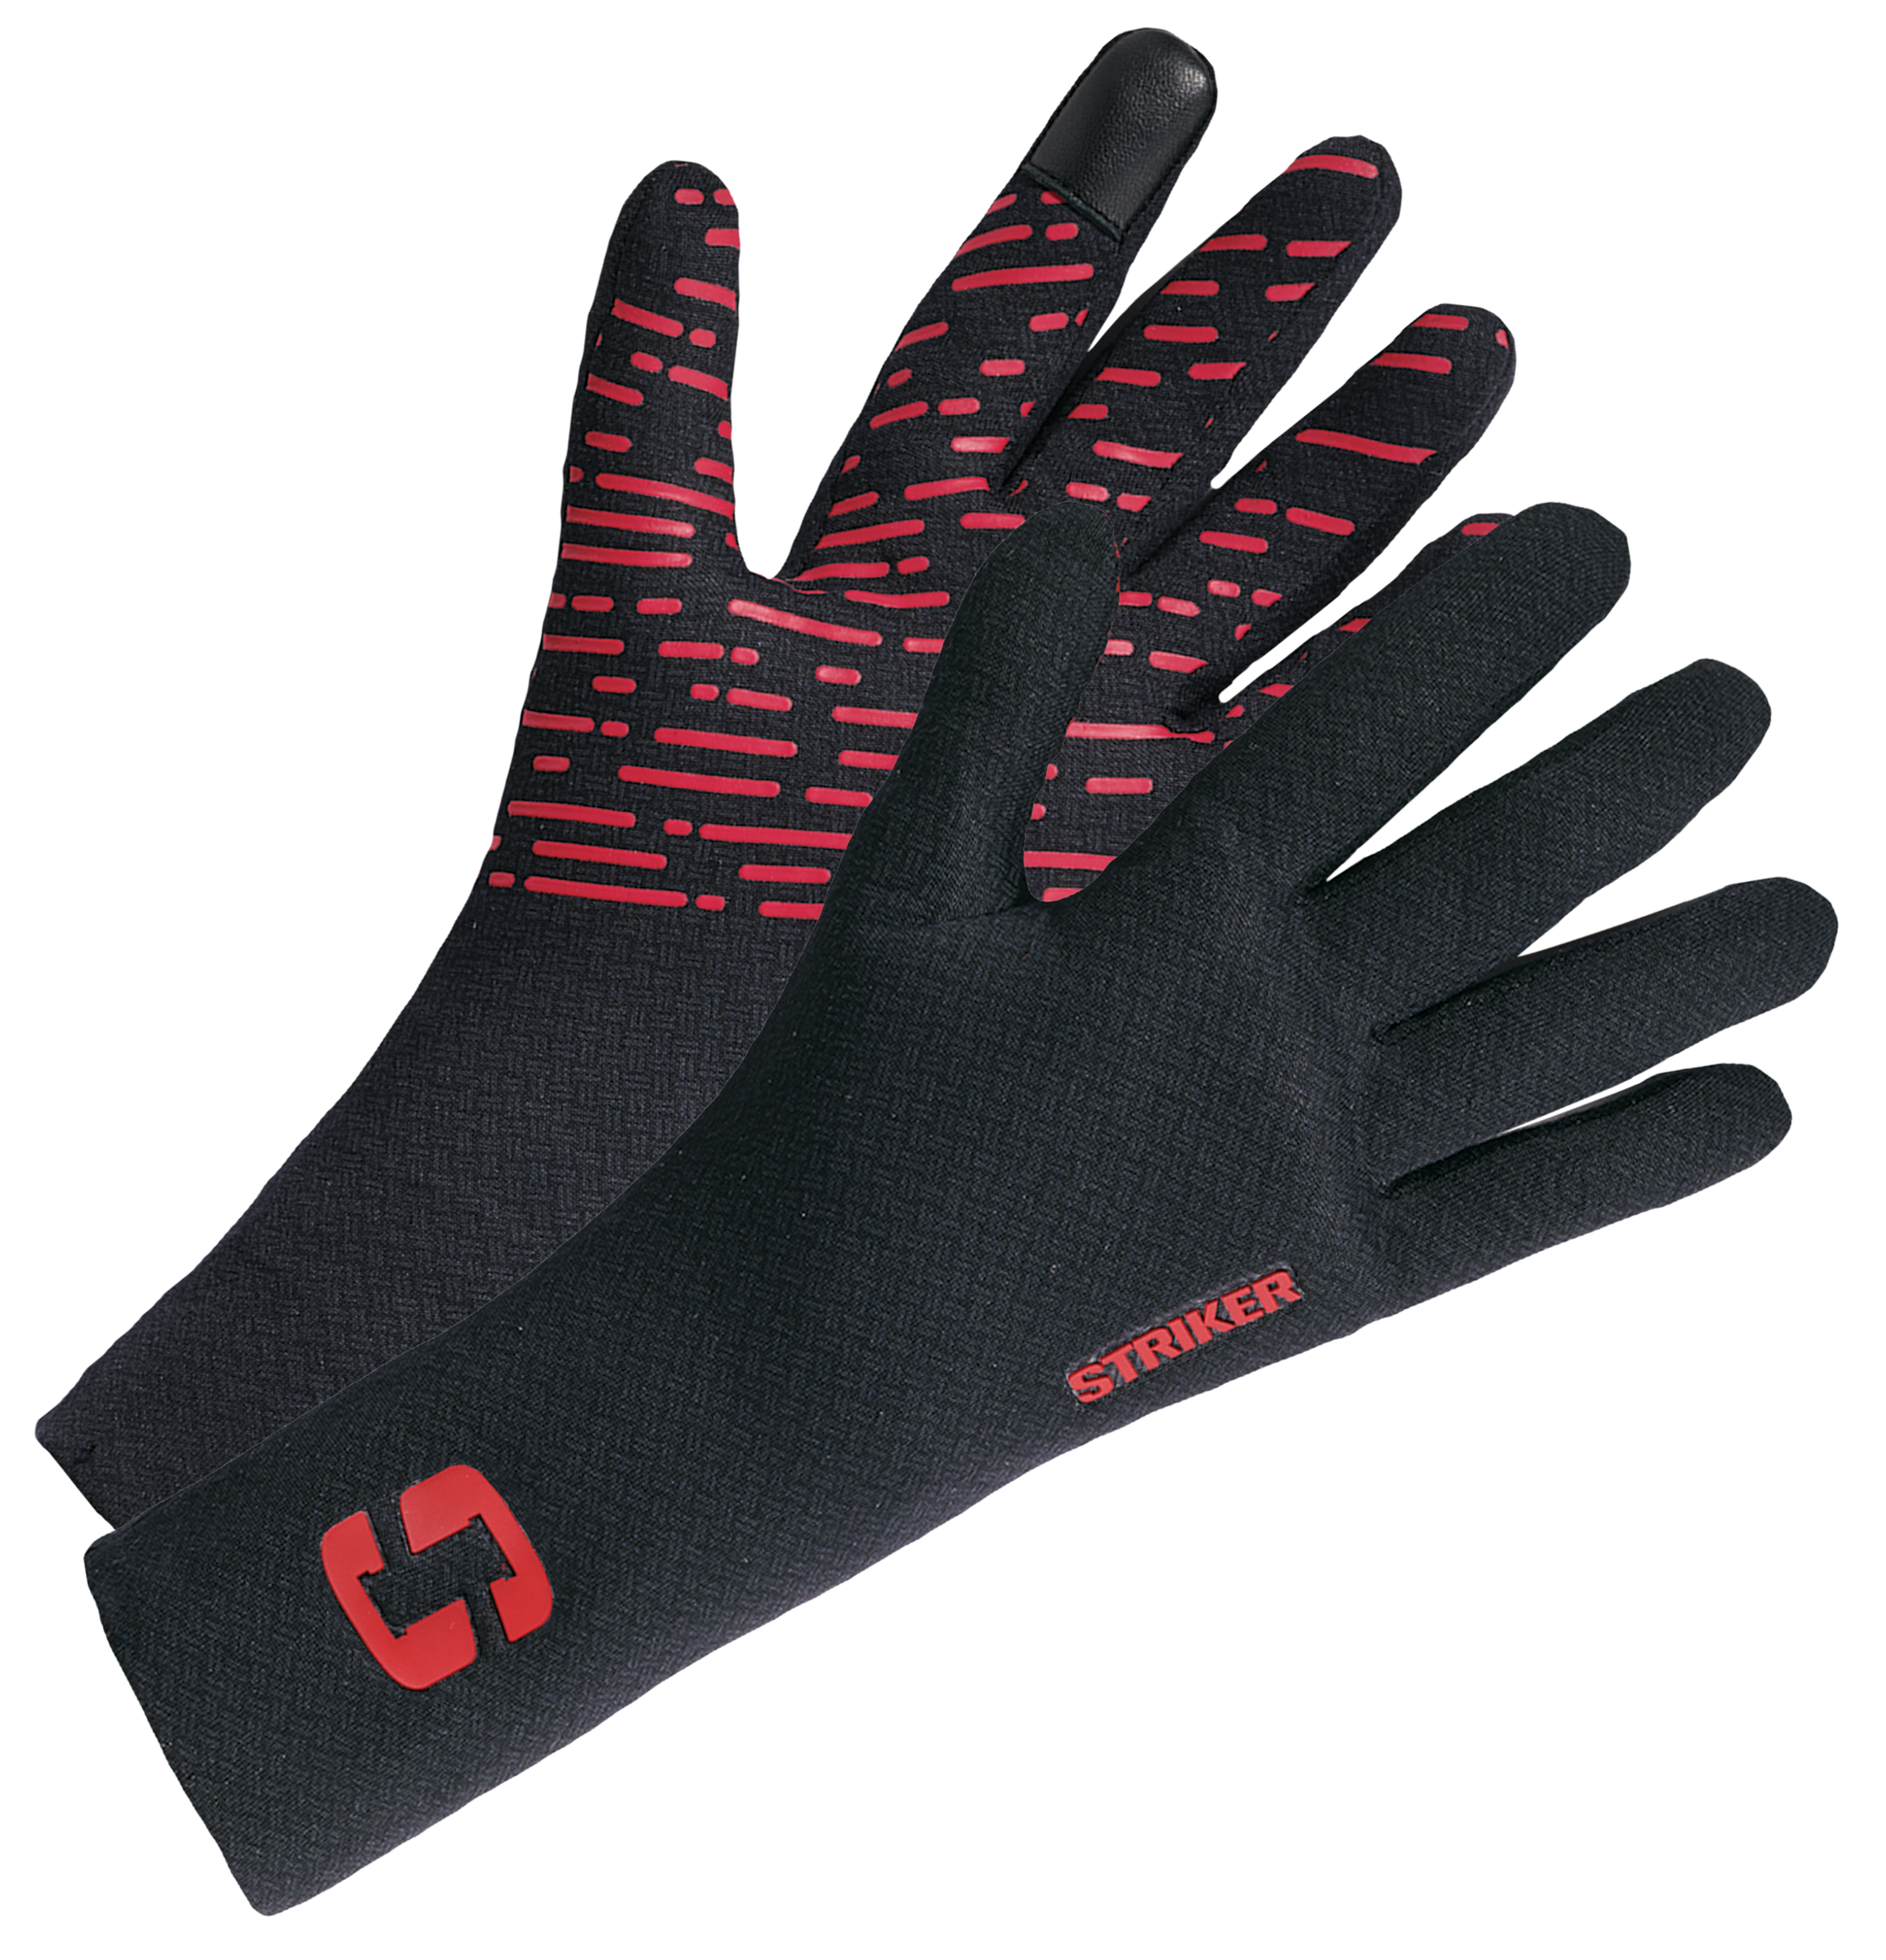 StrikerICE Stealth Gloves